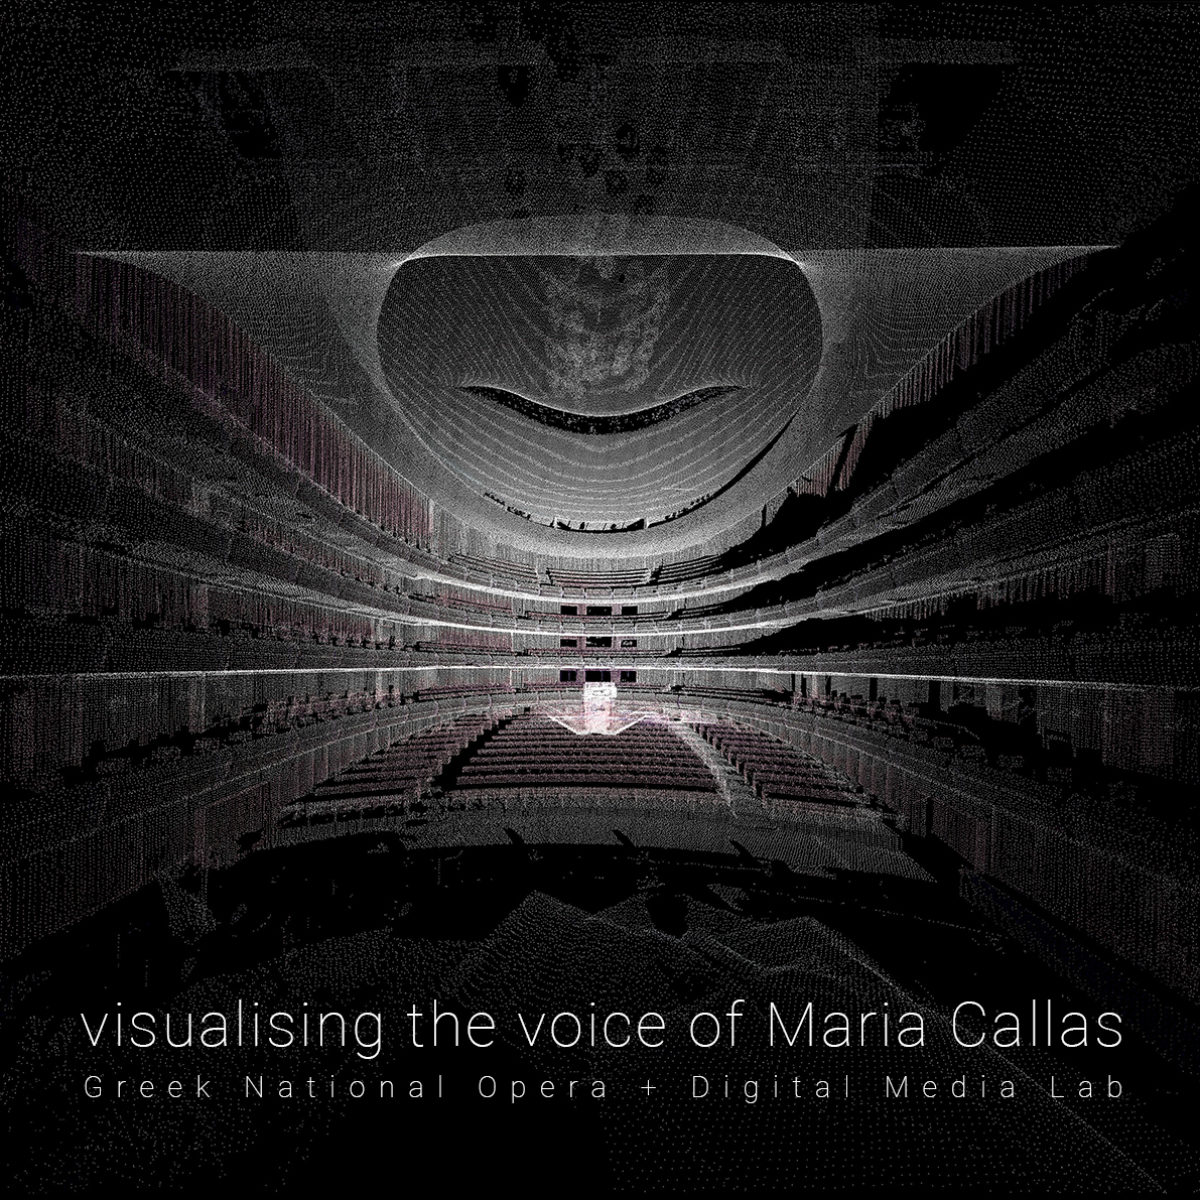 ΠΟΛΥΤΕΧΝΕΙΟ ΚΡΗΤΗΣ : Ανοικτή Πρόσκληση Ενδιαφέροντος – Visualising the Voice of Maria Callas